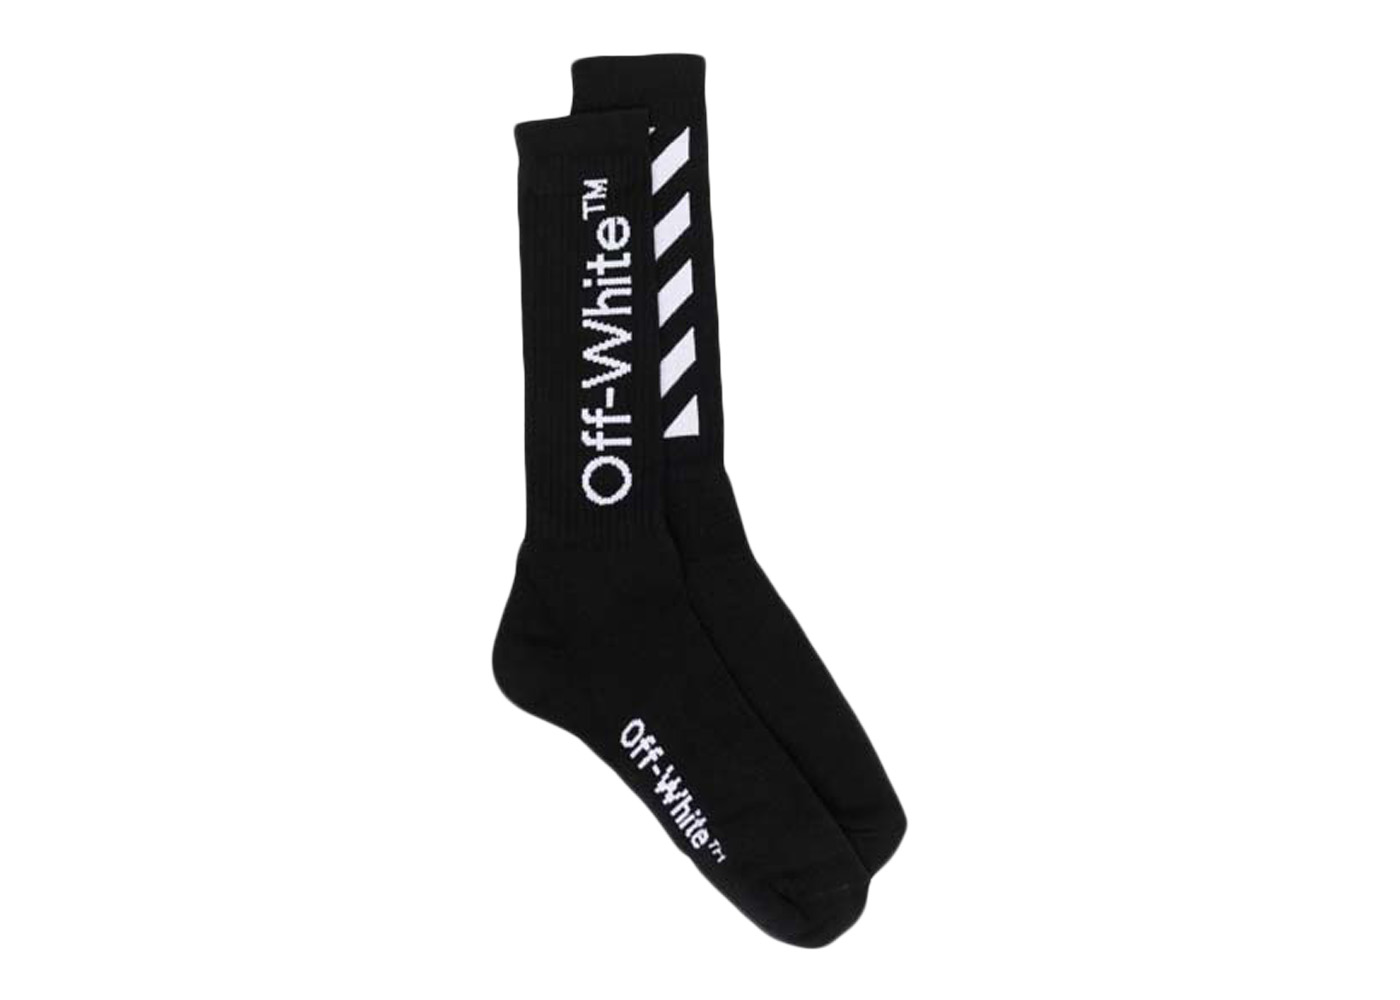 日本製お得Off-White diag socks Black & White セット ソックス